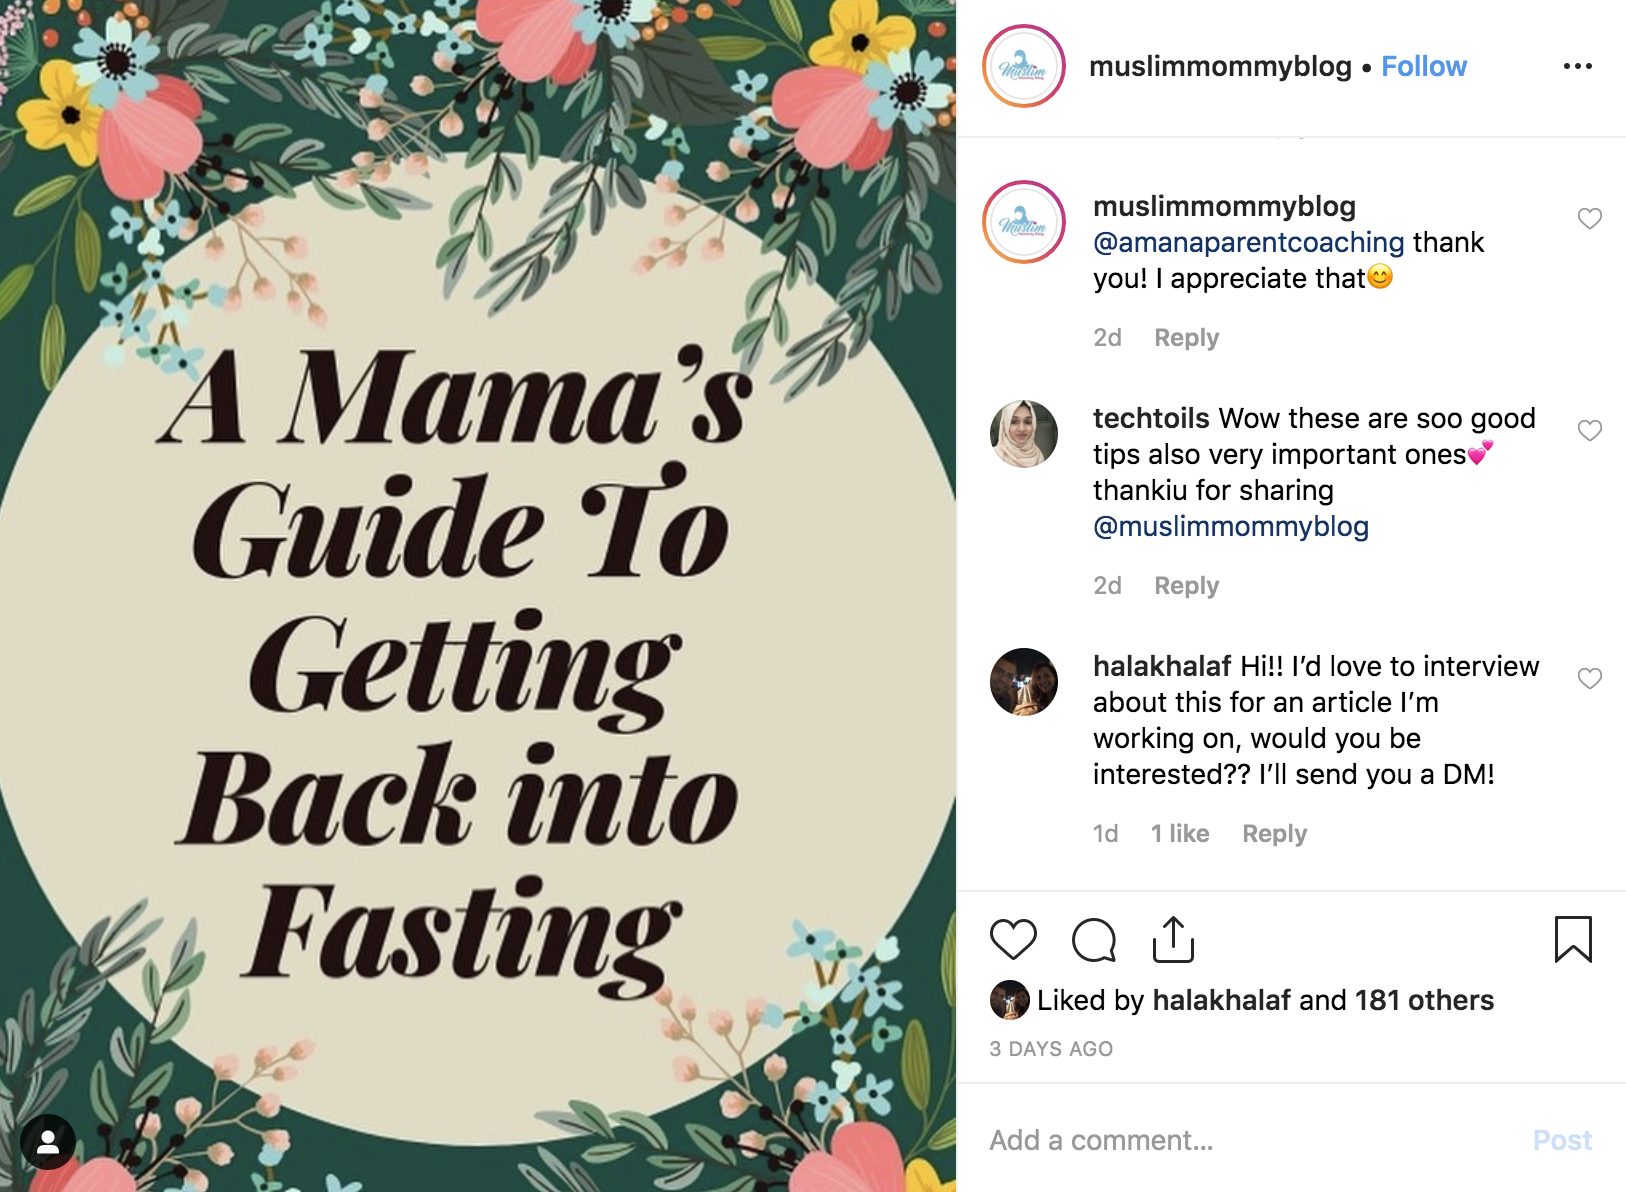 Muslim Mommy Blog